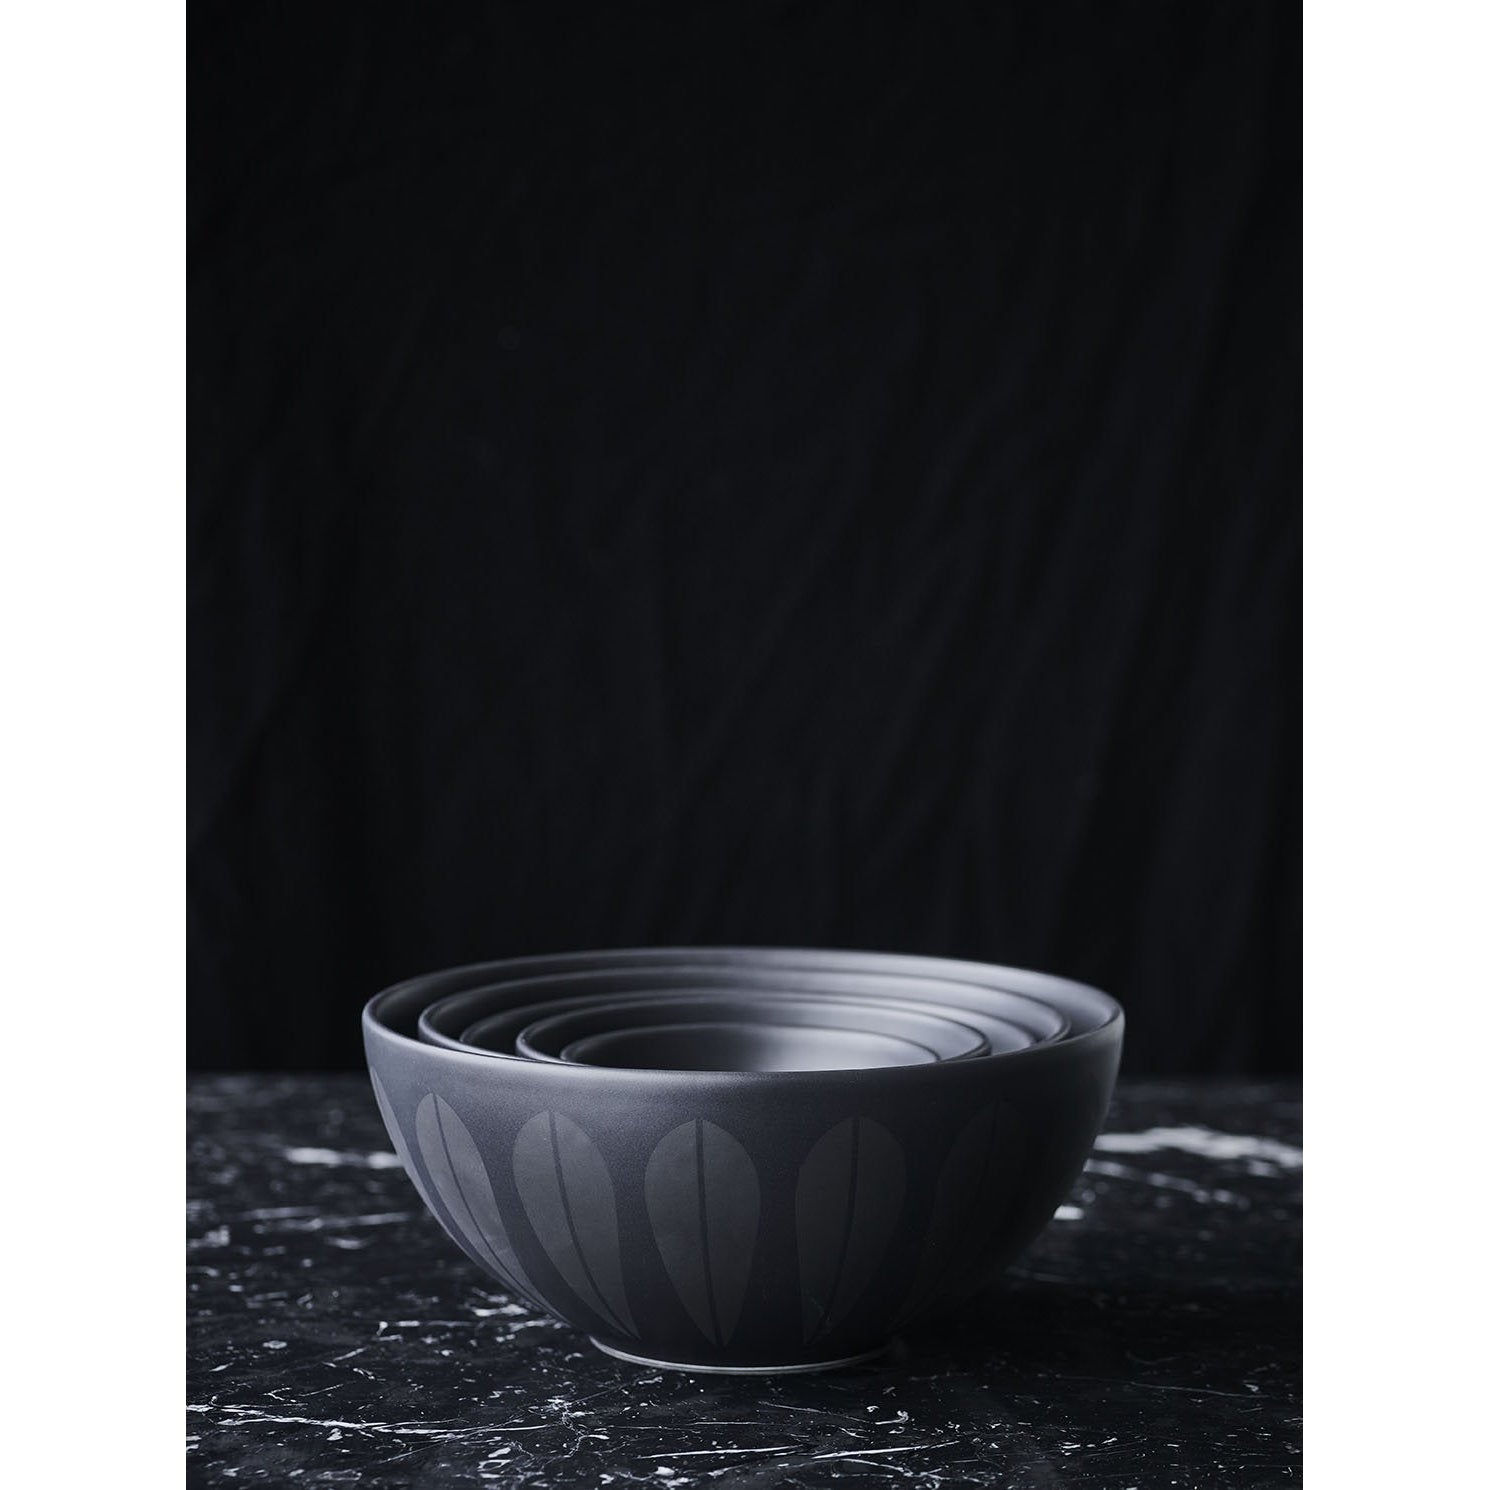 Lucie Kaas Arne Clausen Bowl mörkröd, 18 cm